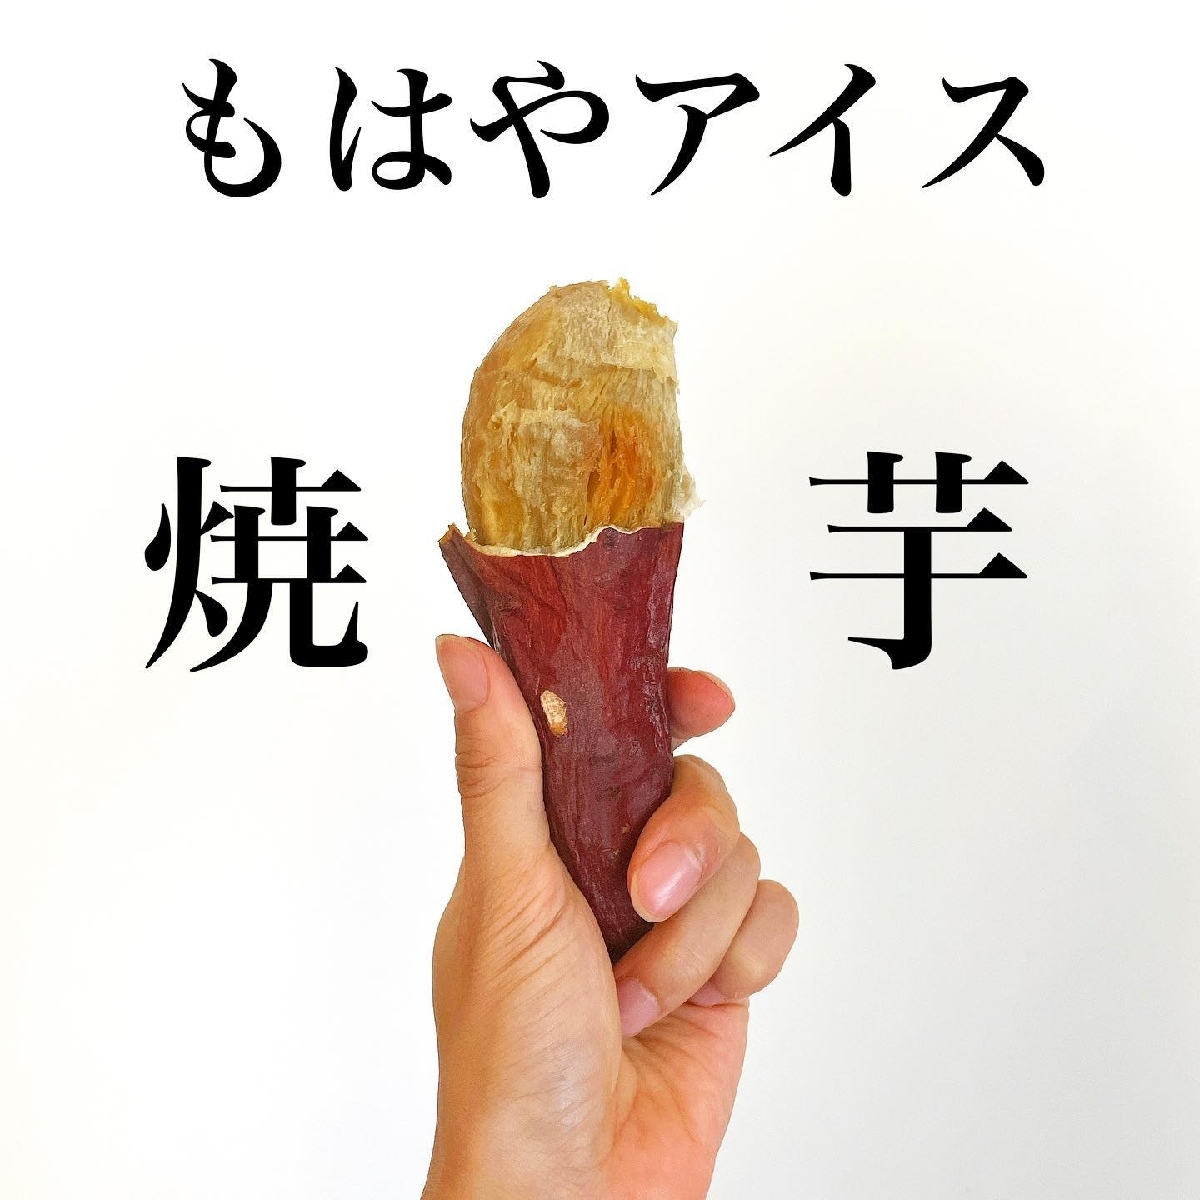 まるでアイス♪北嶋佳奈さんの冷凍焼き芋「#かな芋」を作ってみよう